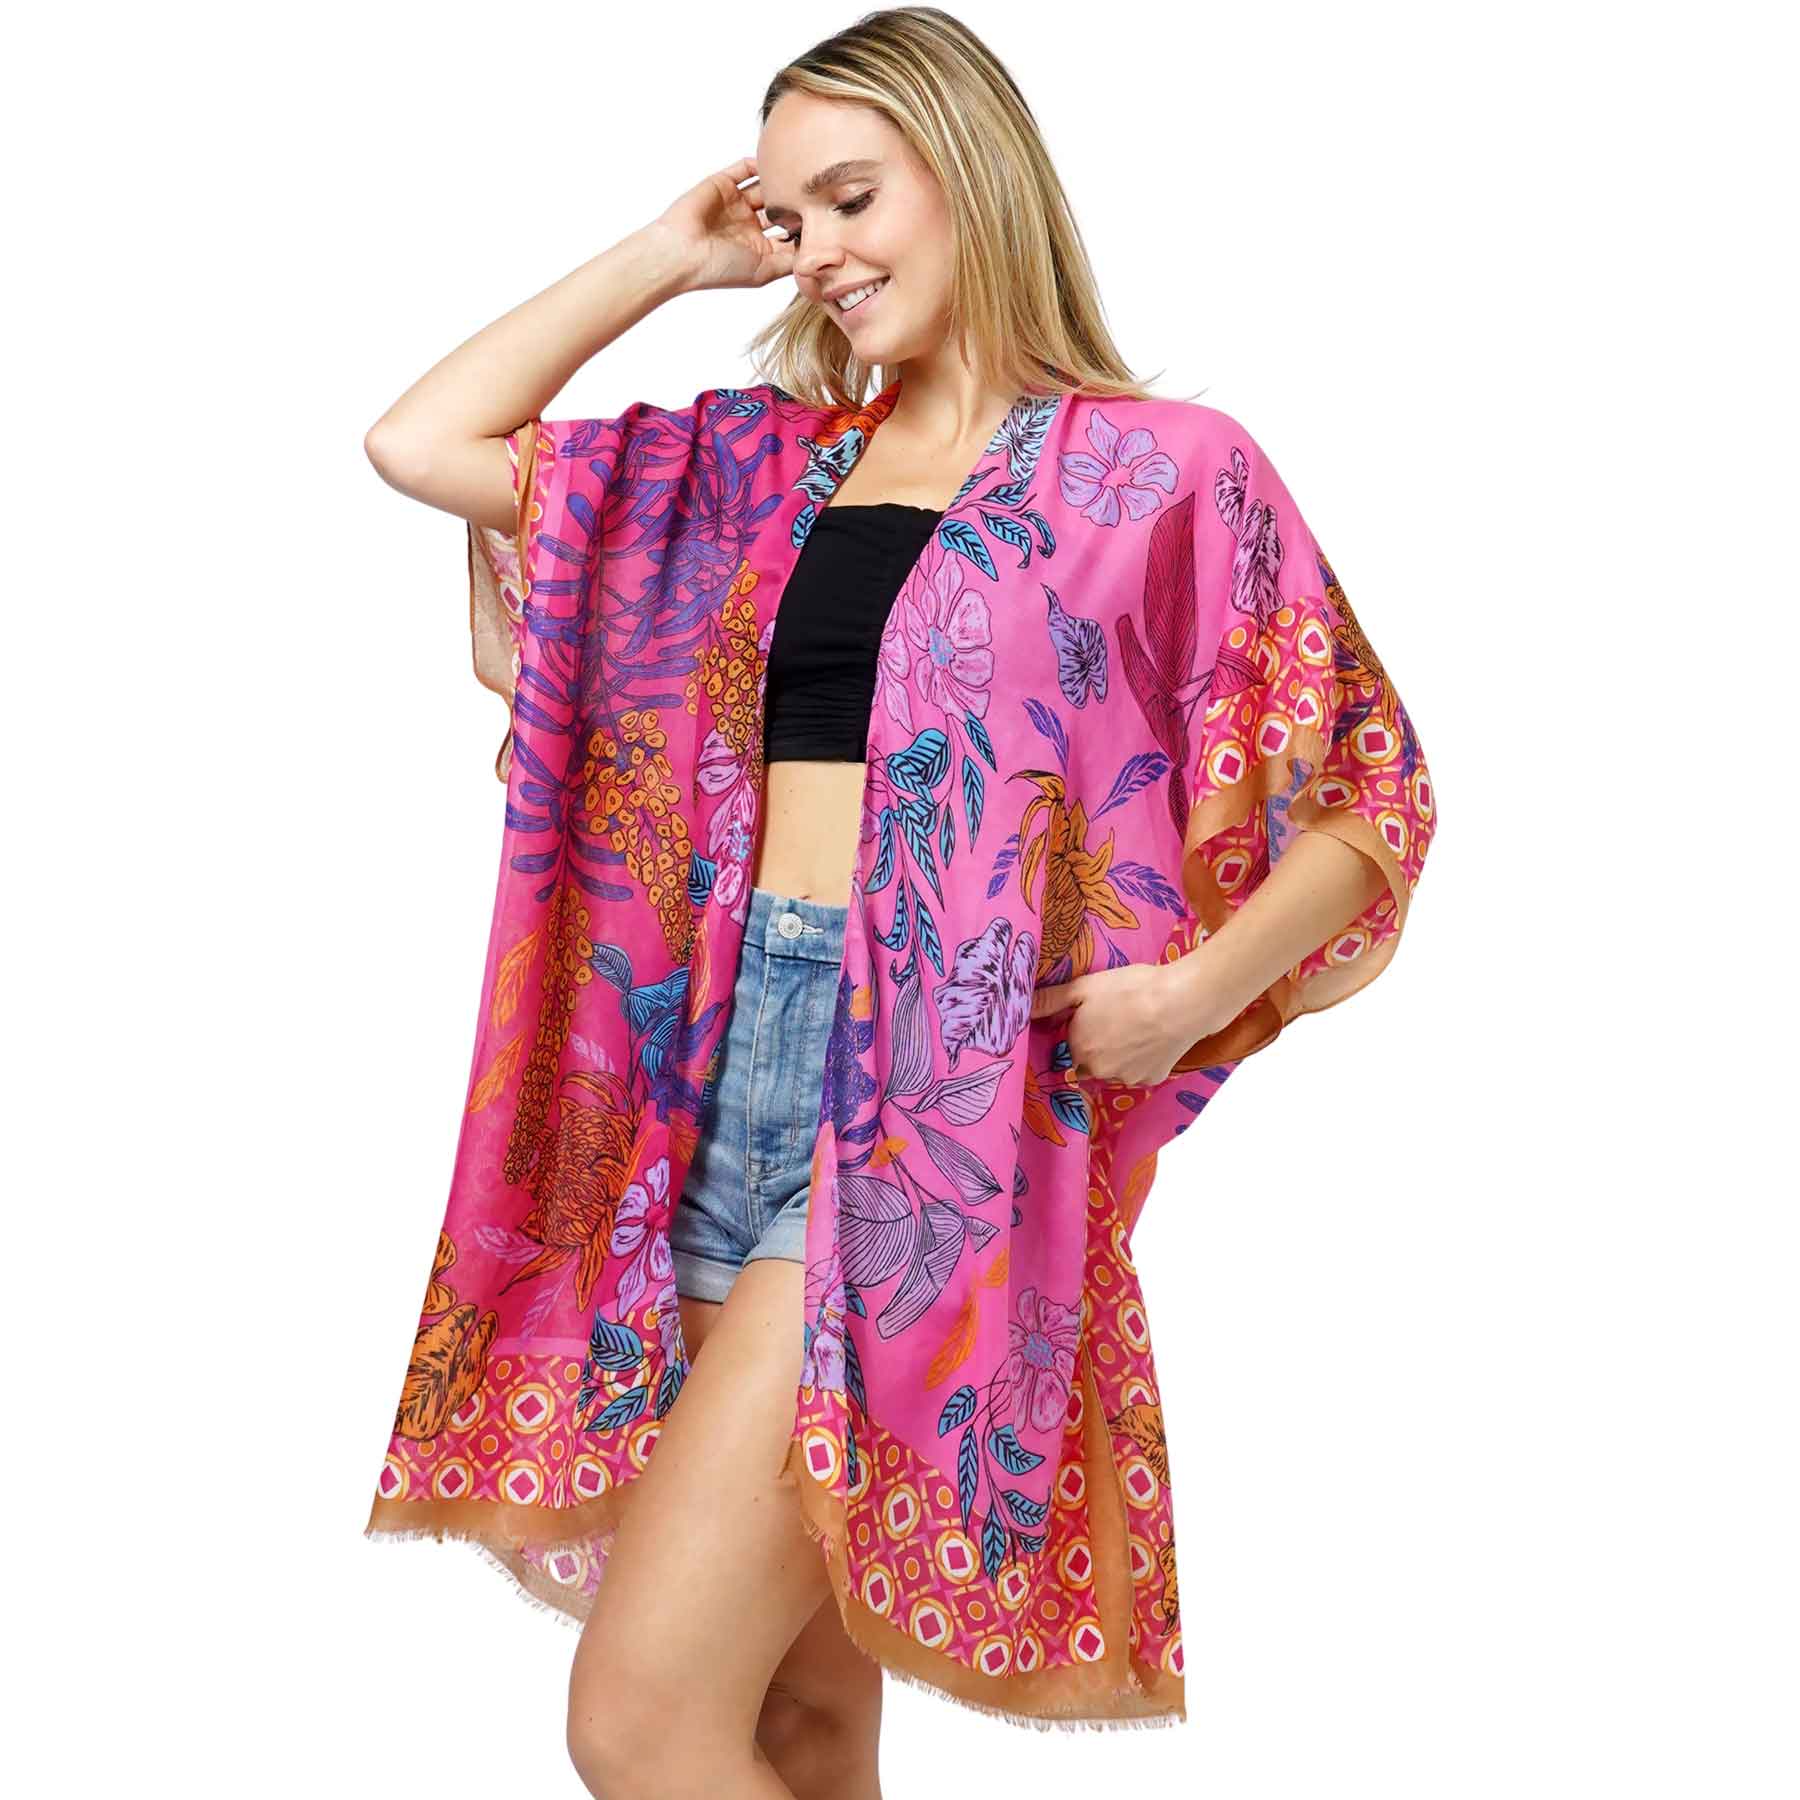 10983 - Fuchsia<br>
Floral Print Kimono